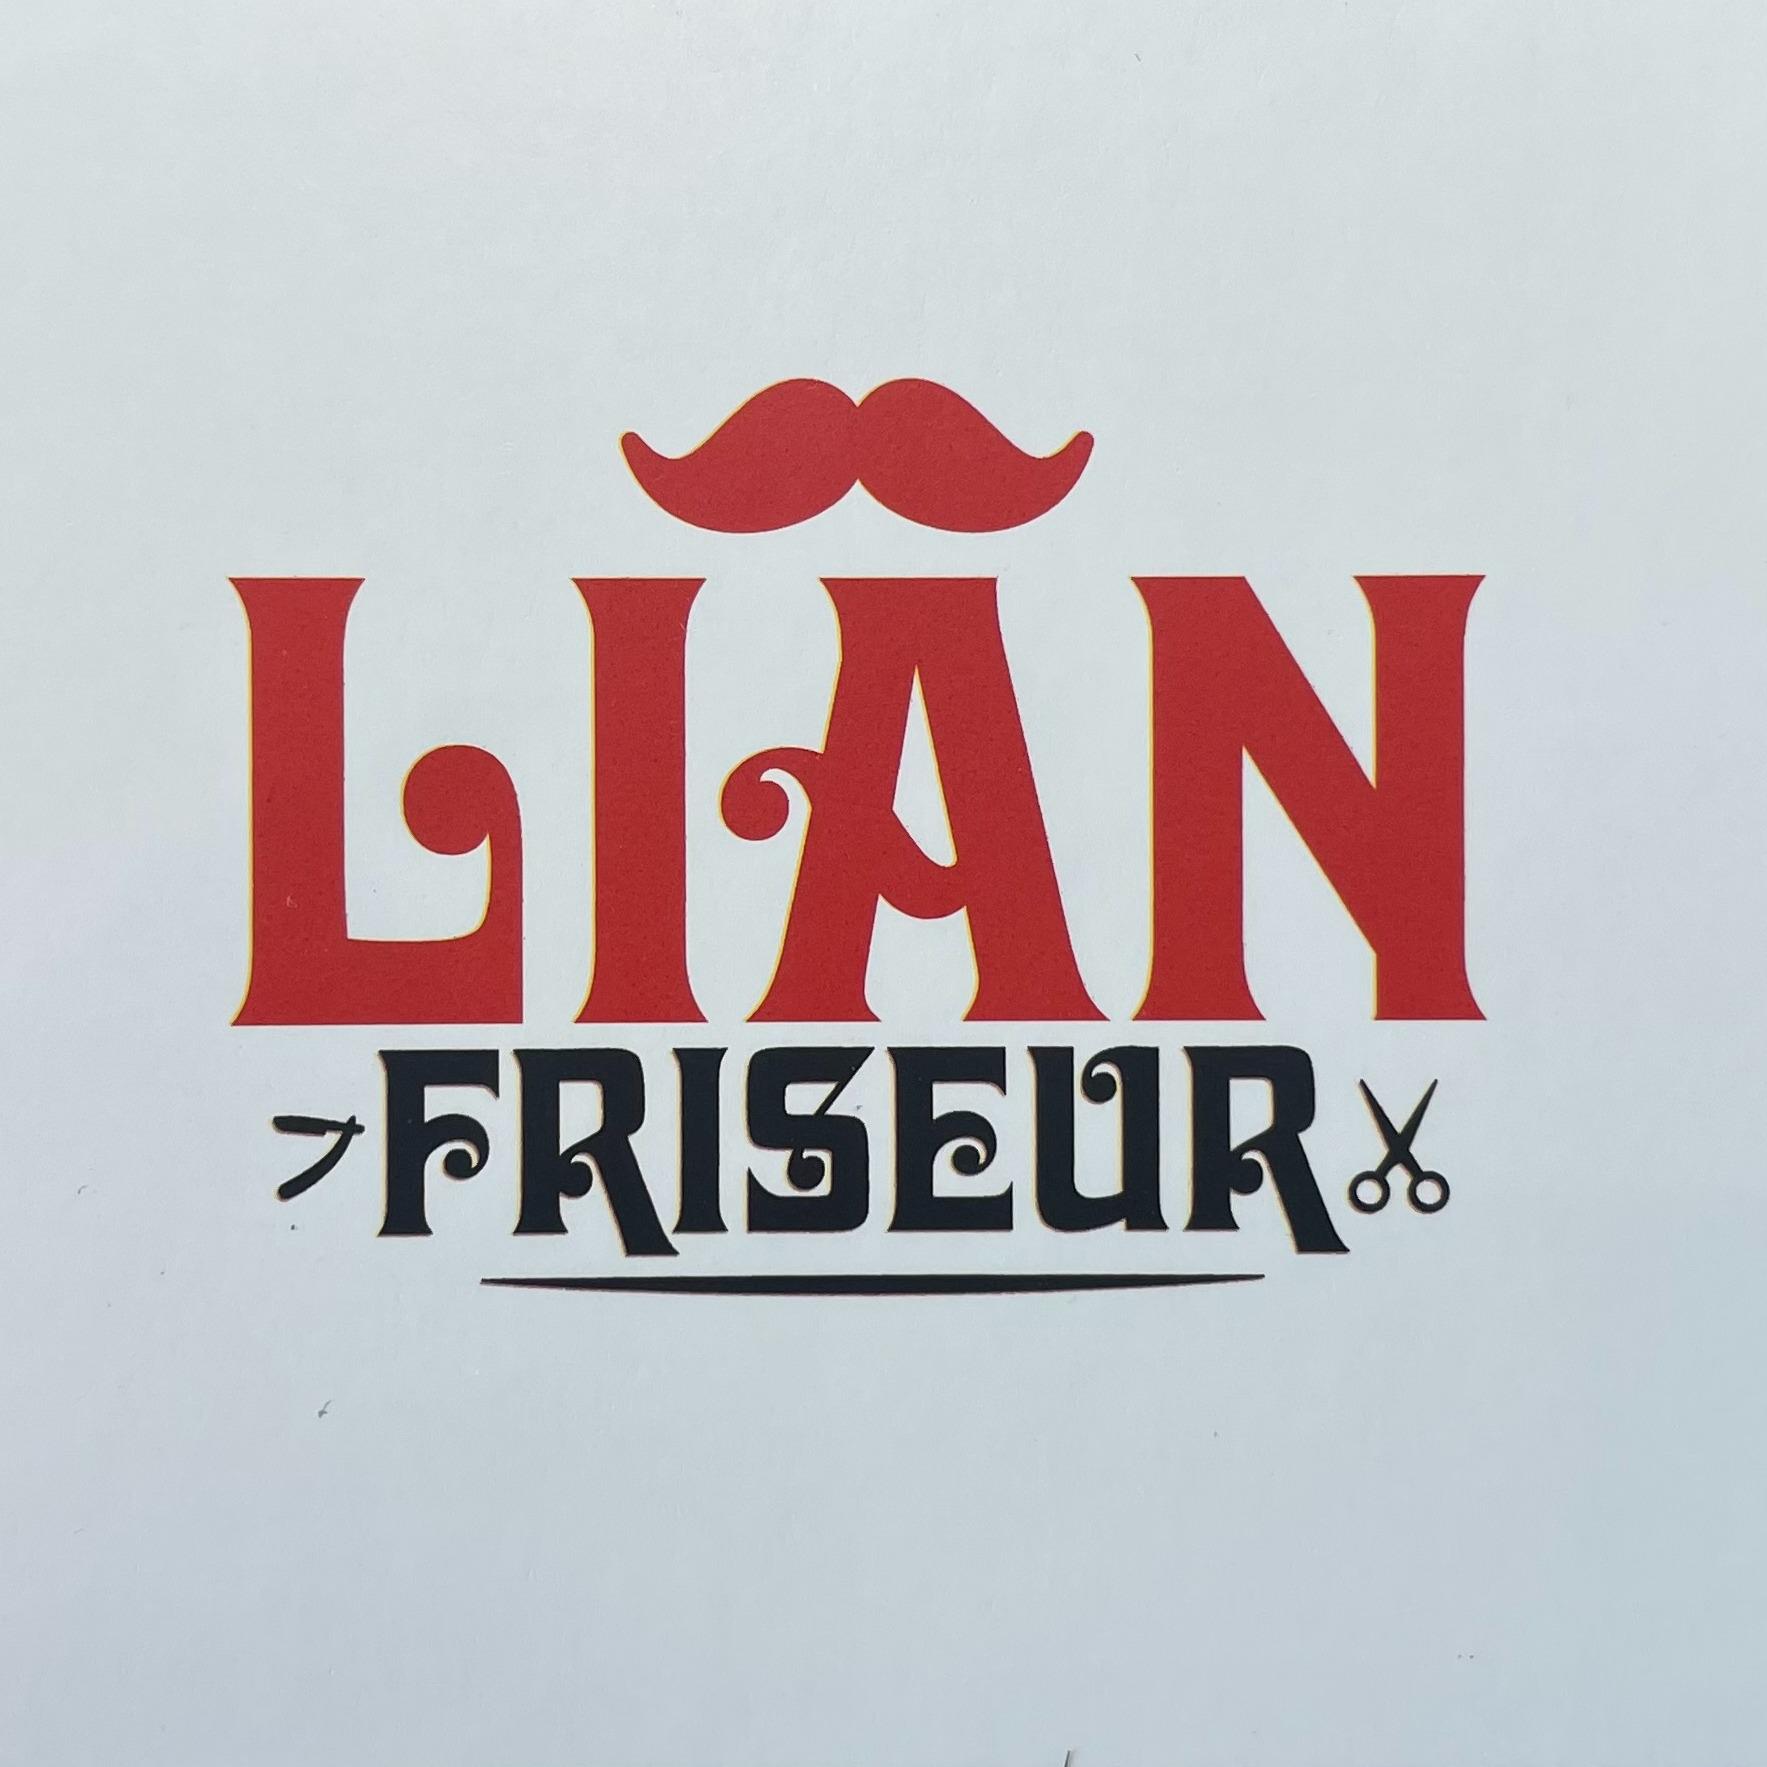 Logo Lian Friseur